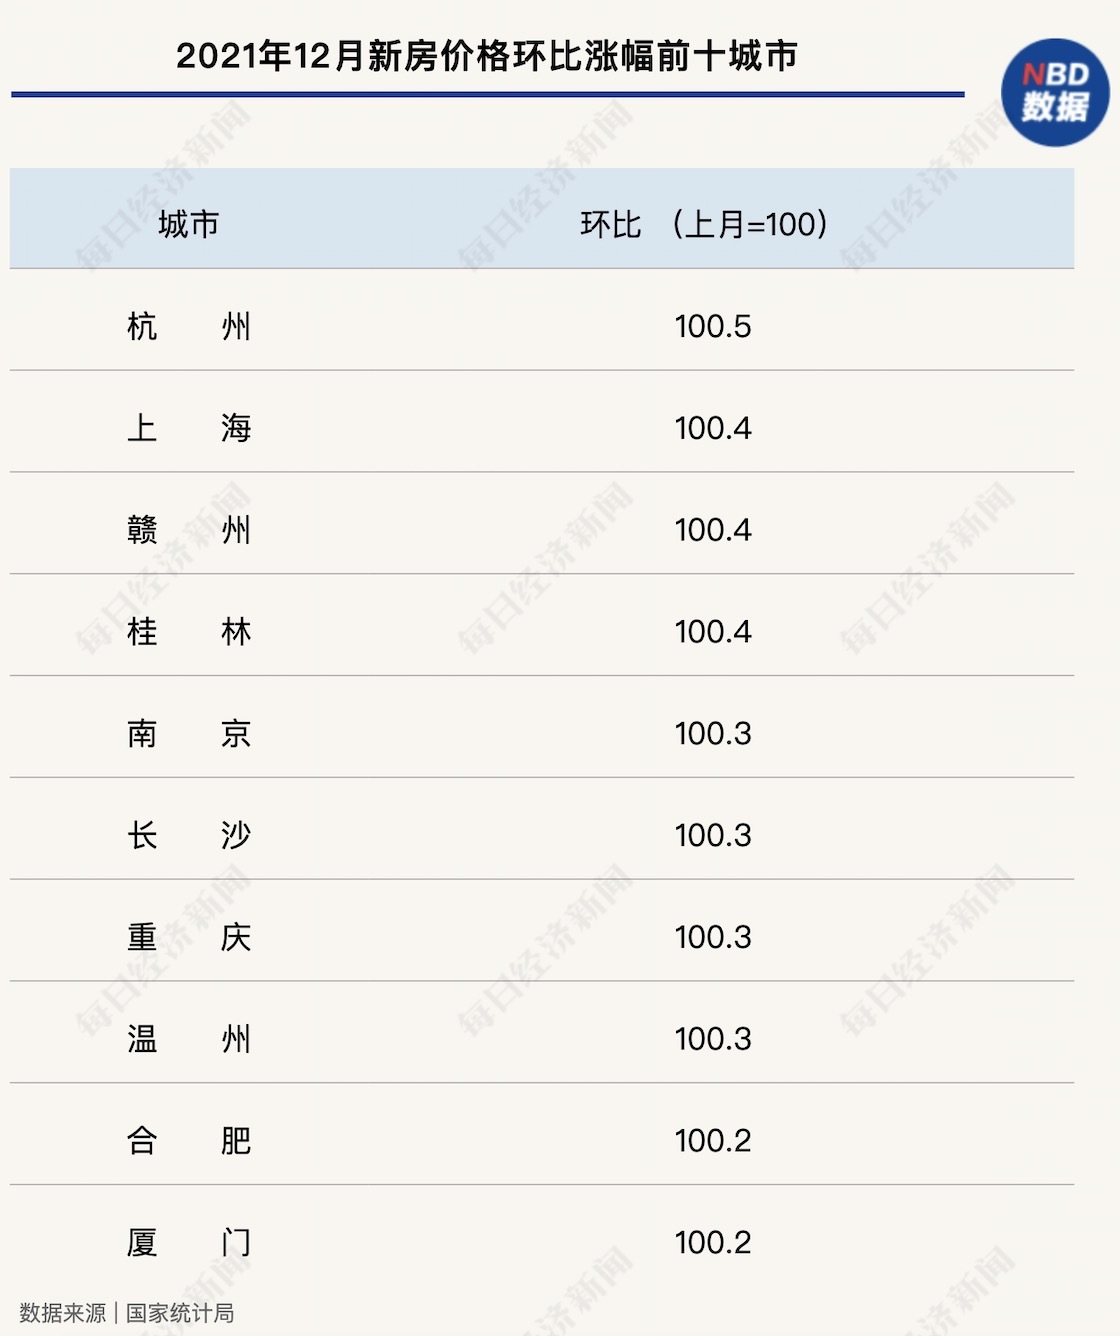 去年12月杭州新房价格领涨全国 北京二手房价格反弹